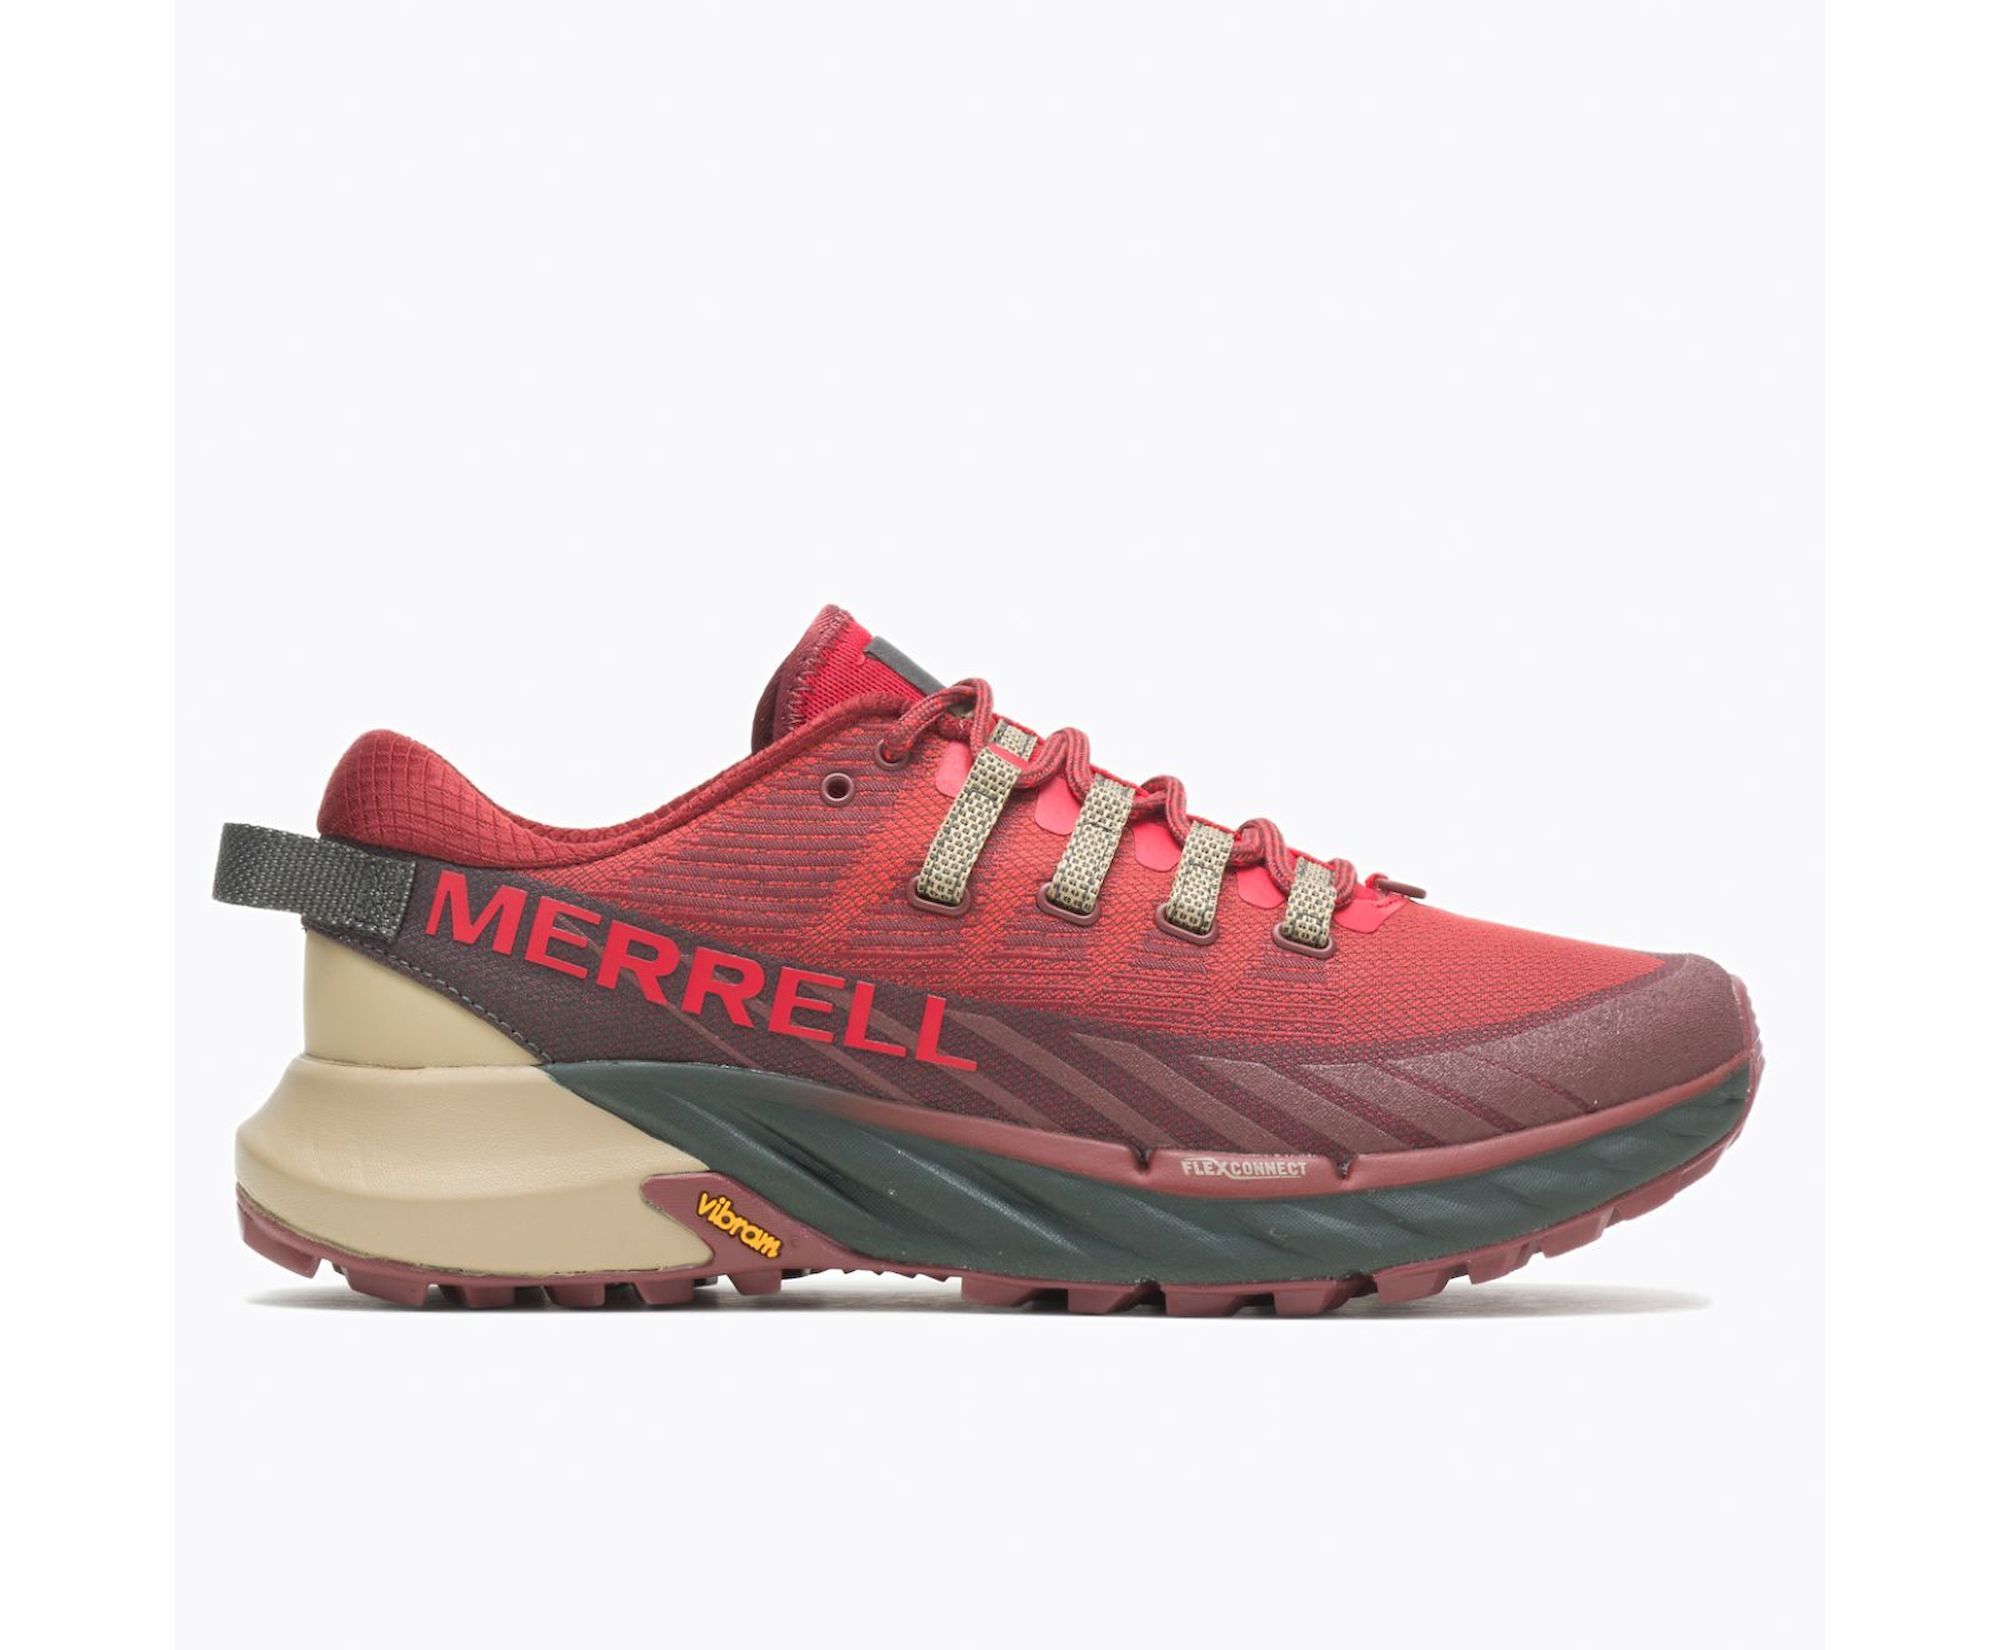 Merrell Agility Peak 4 - Trail running shoes - Men's